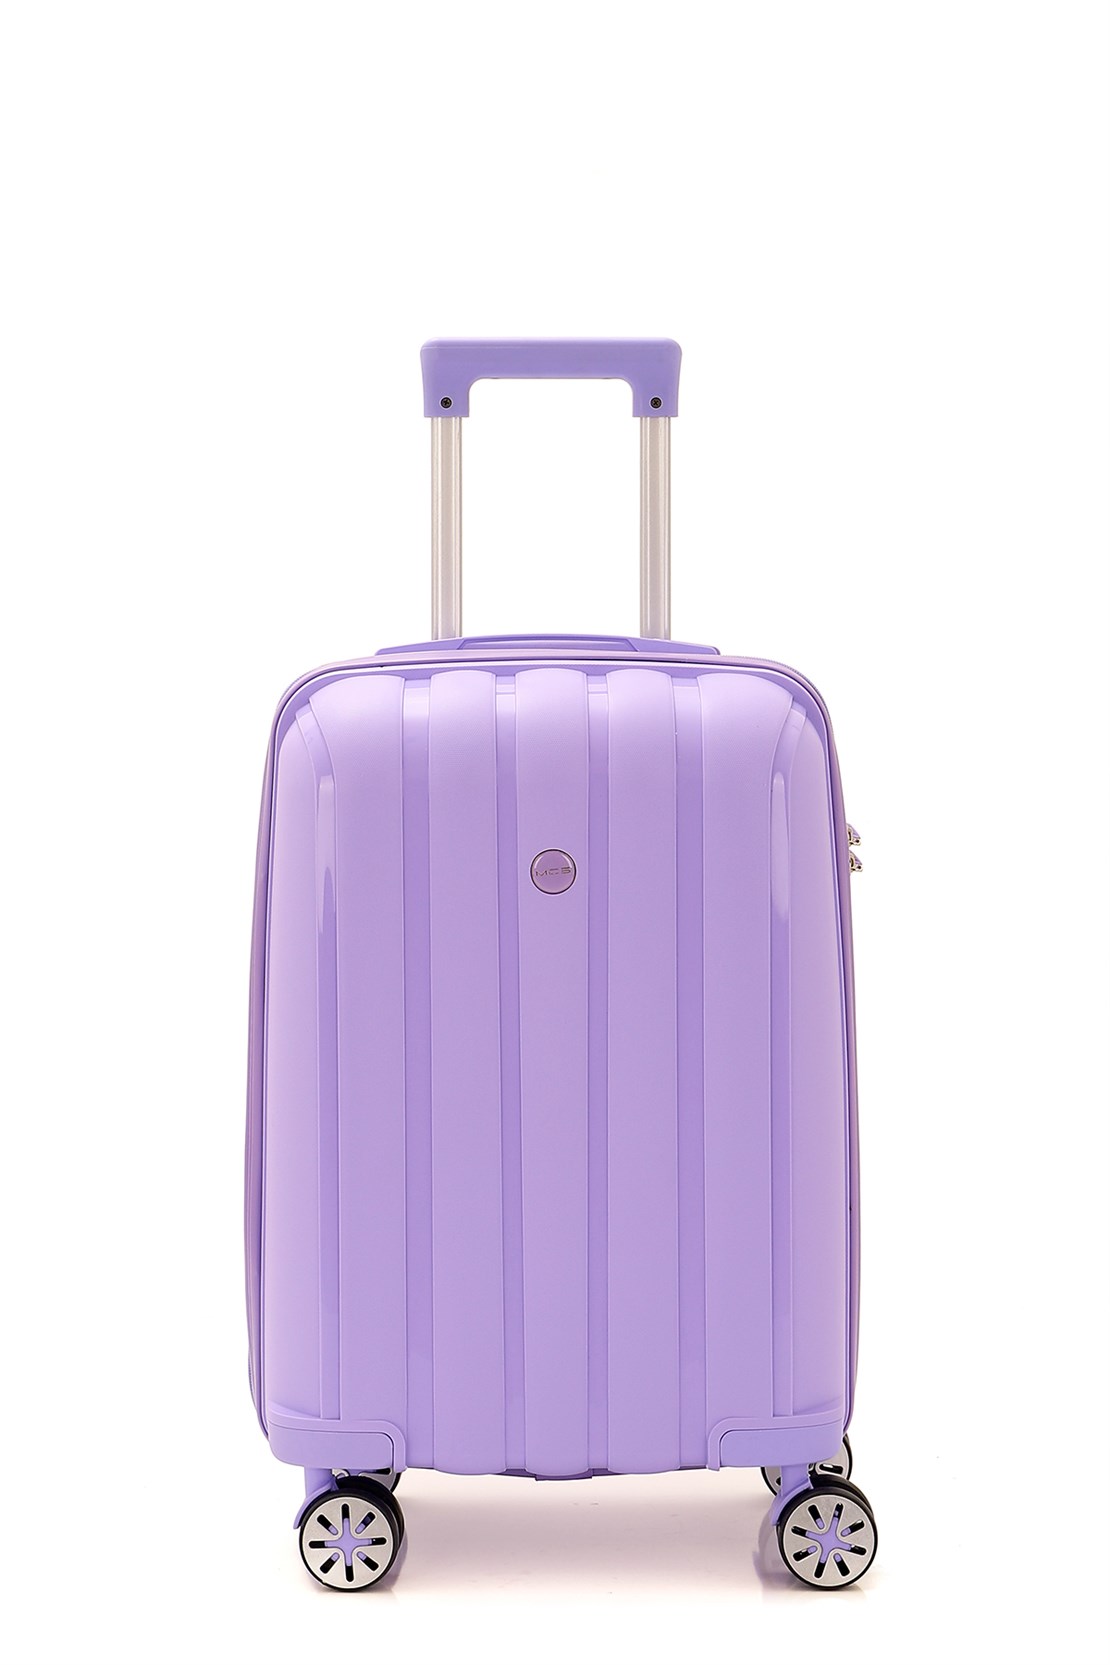 Маленький чемодан для ручьной клади из полипропилена MCS 305 S LILIA! Для 8-10 кг! - 3